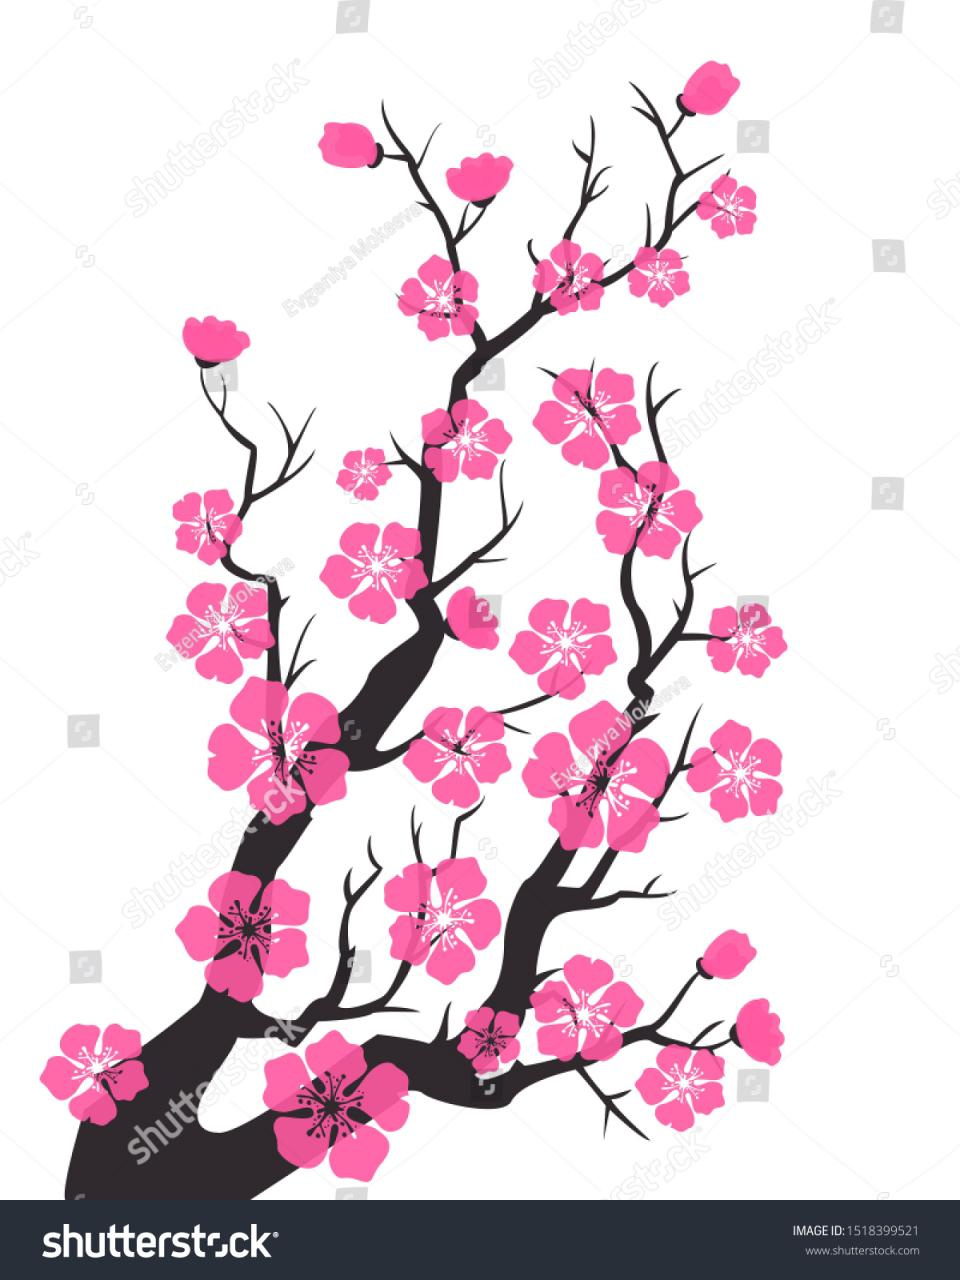 Hoa anh đào Sakura là biểu tượng của vẻ đẹp tinh khiết và sự tươi mới. Hình ảnh những cánh hoa anh đào đang nở rộ làm người ta cảm thấy vô cùng thư thái và độc đáo. Nếu bạn muốn khám phá vẻ đẹp của hoa anh đào, hãy xem ảnh liên quan đến từ khóa này.